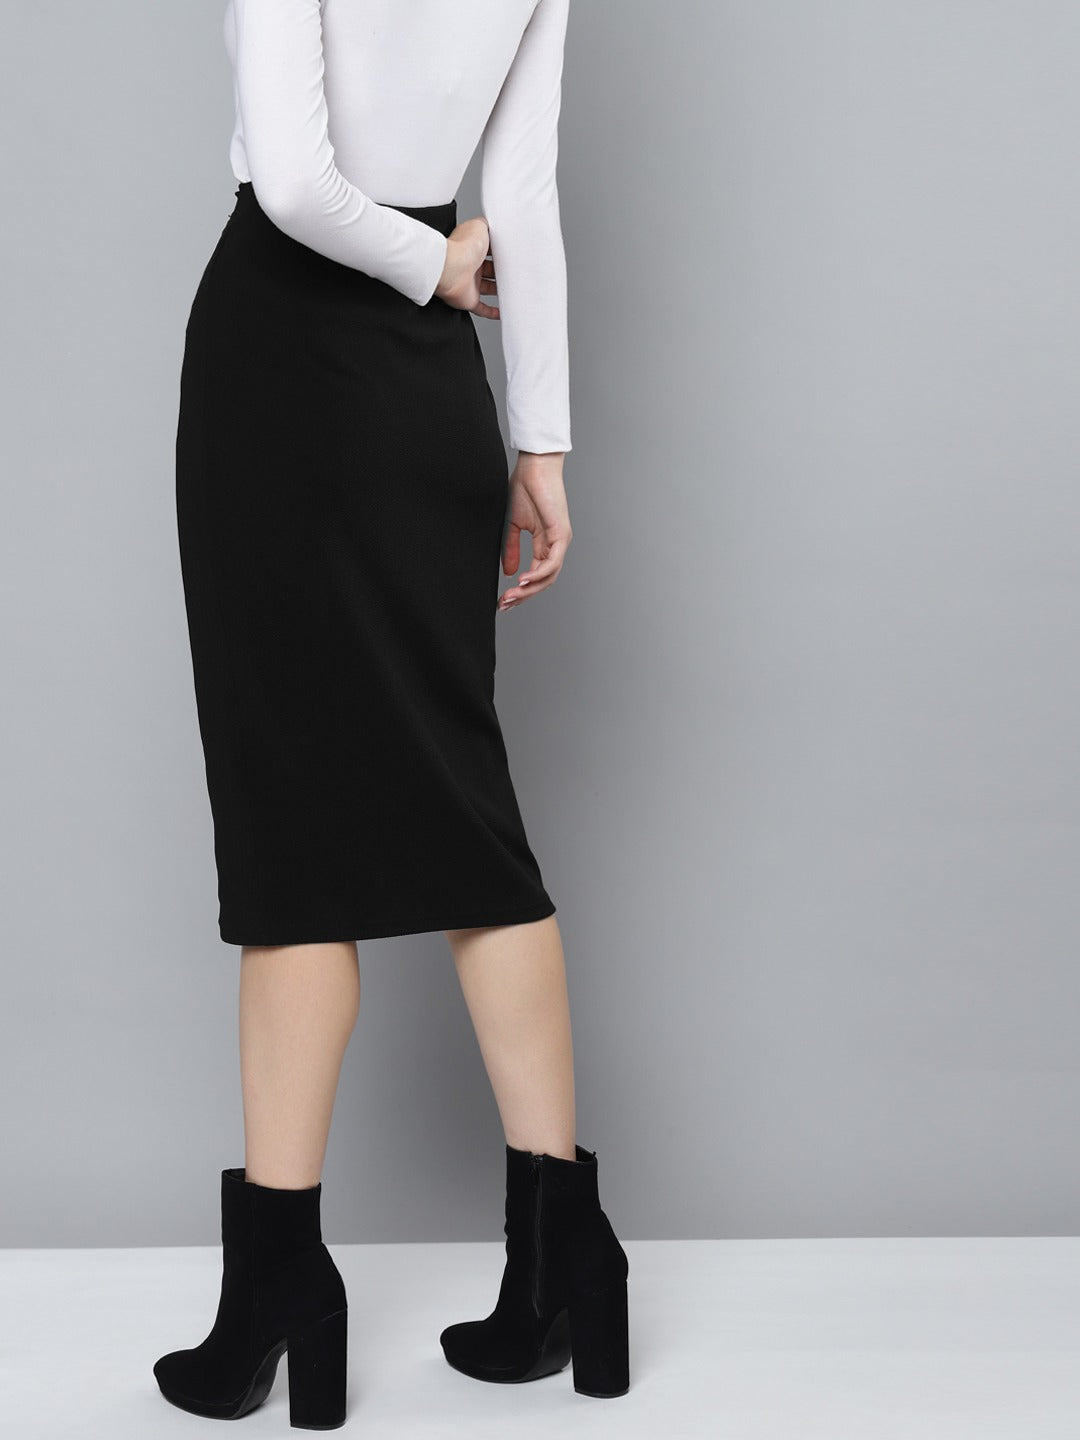 Black Twisted Midi Skirt